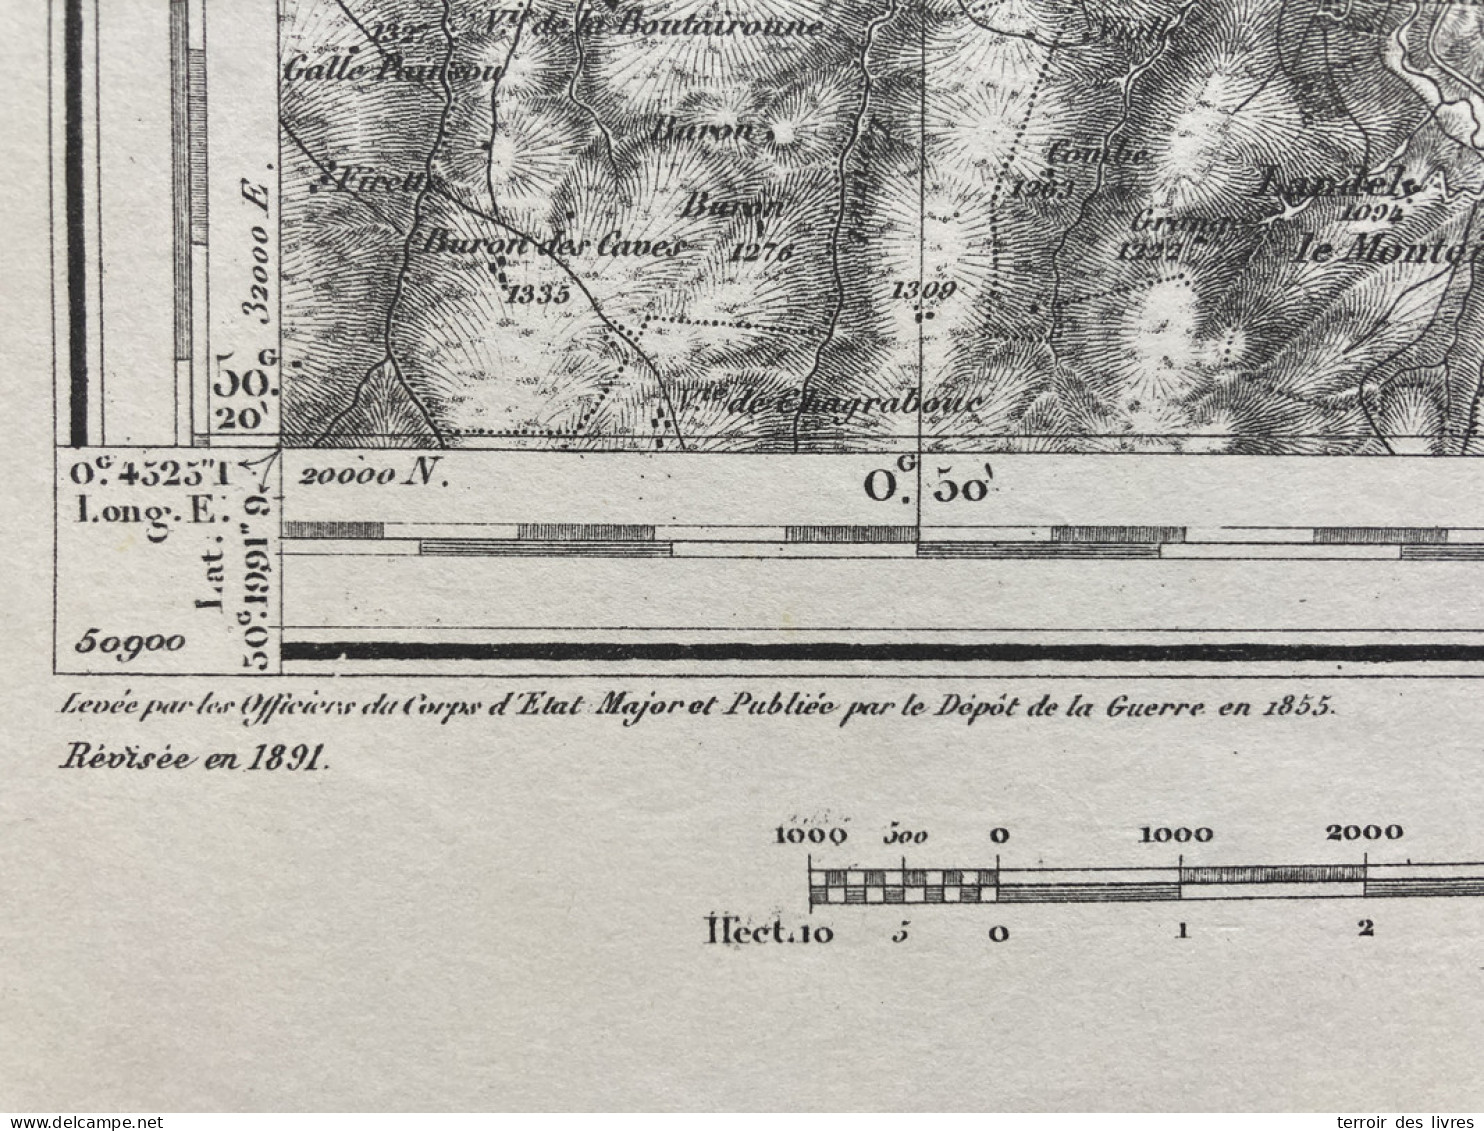 Carte état Major BRIOUDE S.O. 1855 1891 35x54cm PRADIER LANDEYRAT ALLANCHE VEZE VERNOLS MARCENAT MOLEDES MONTGRELEIX SEG - Cartes Géographiques